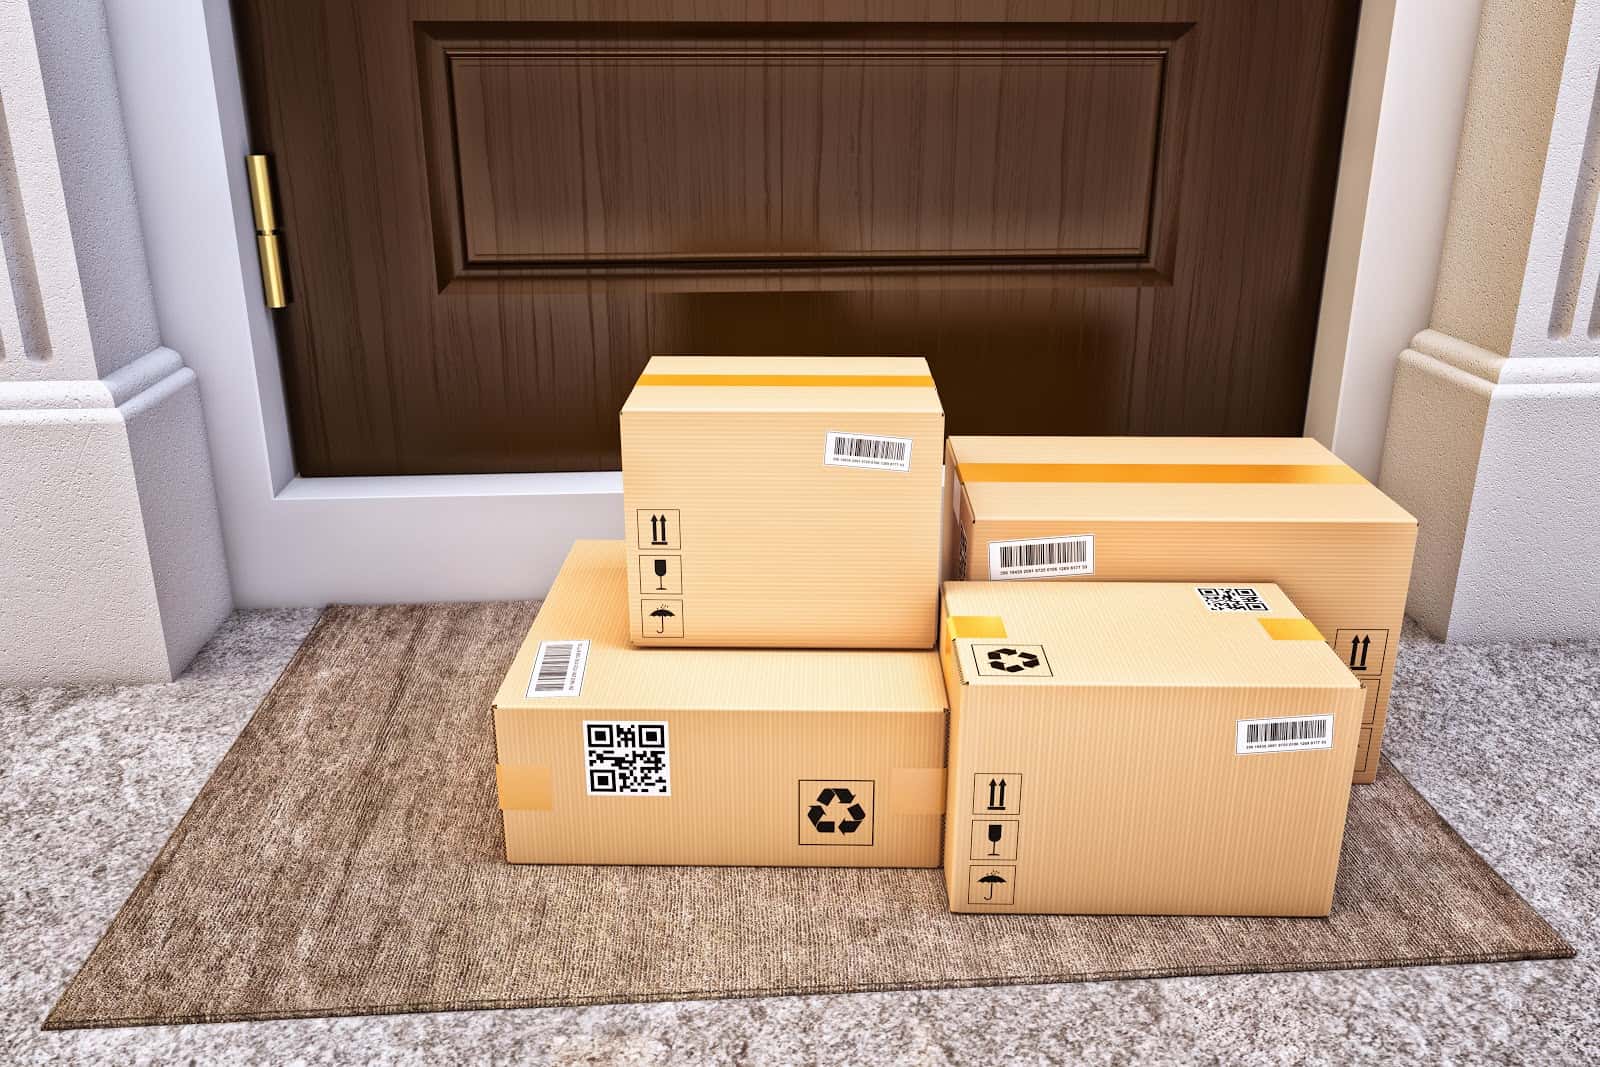 Cardboard packages on doorstep